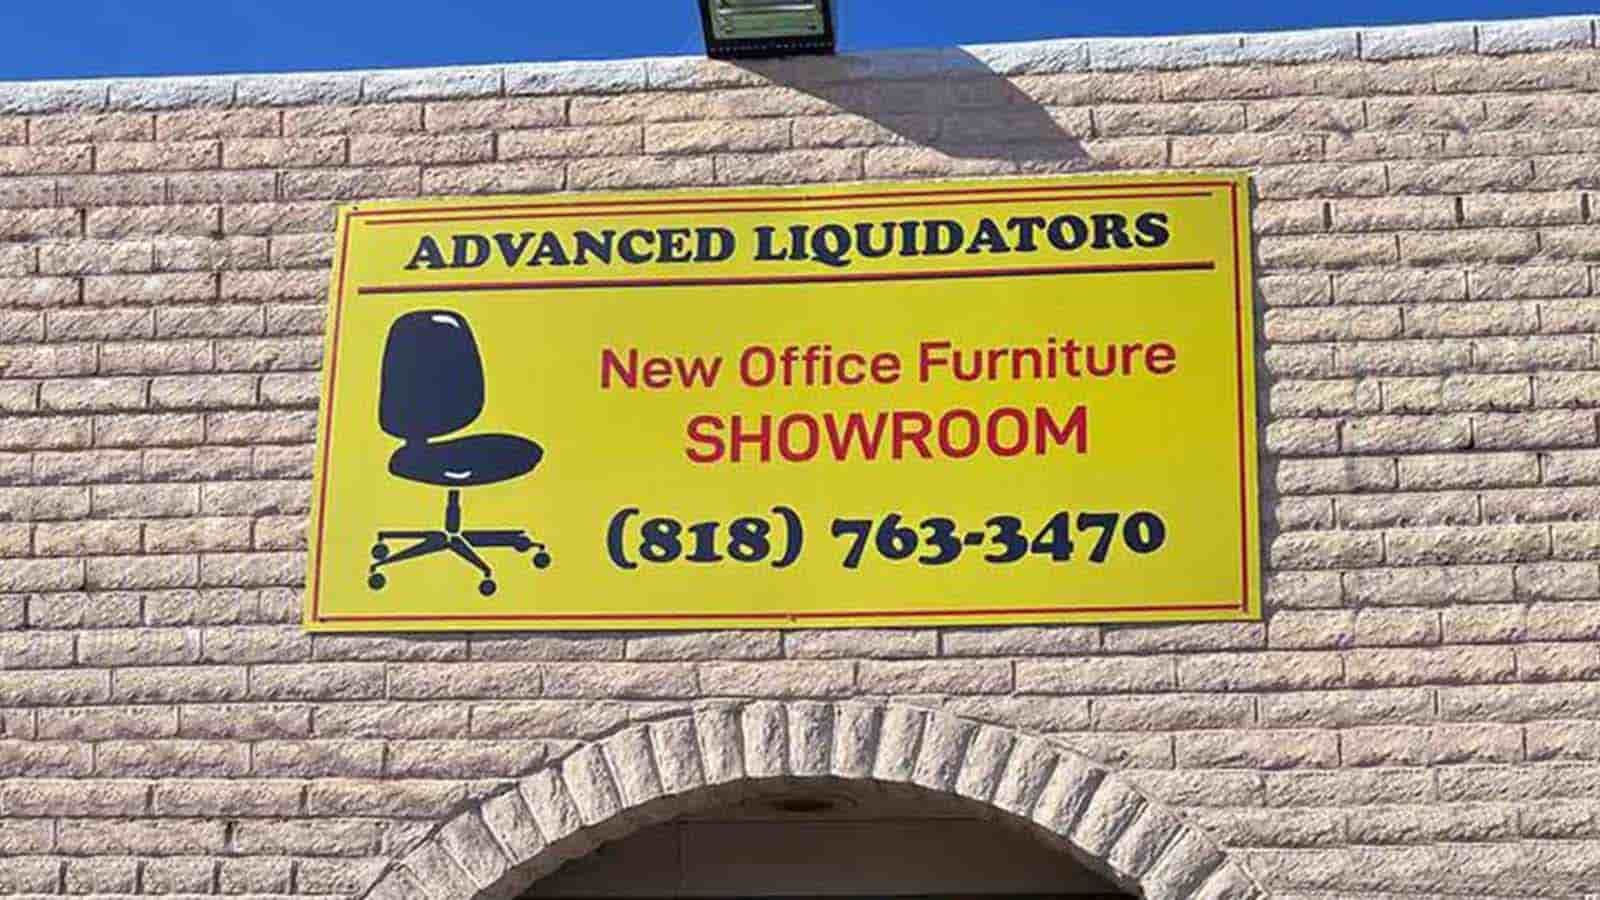 Advanced Liquidators building sign